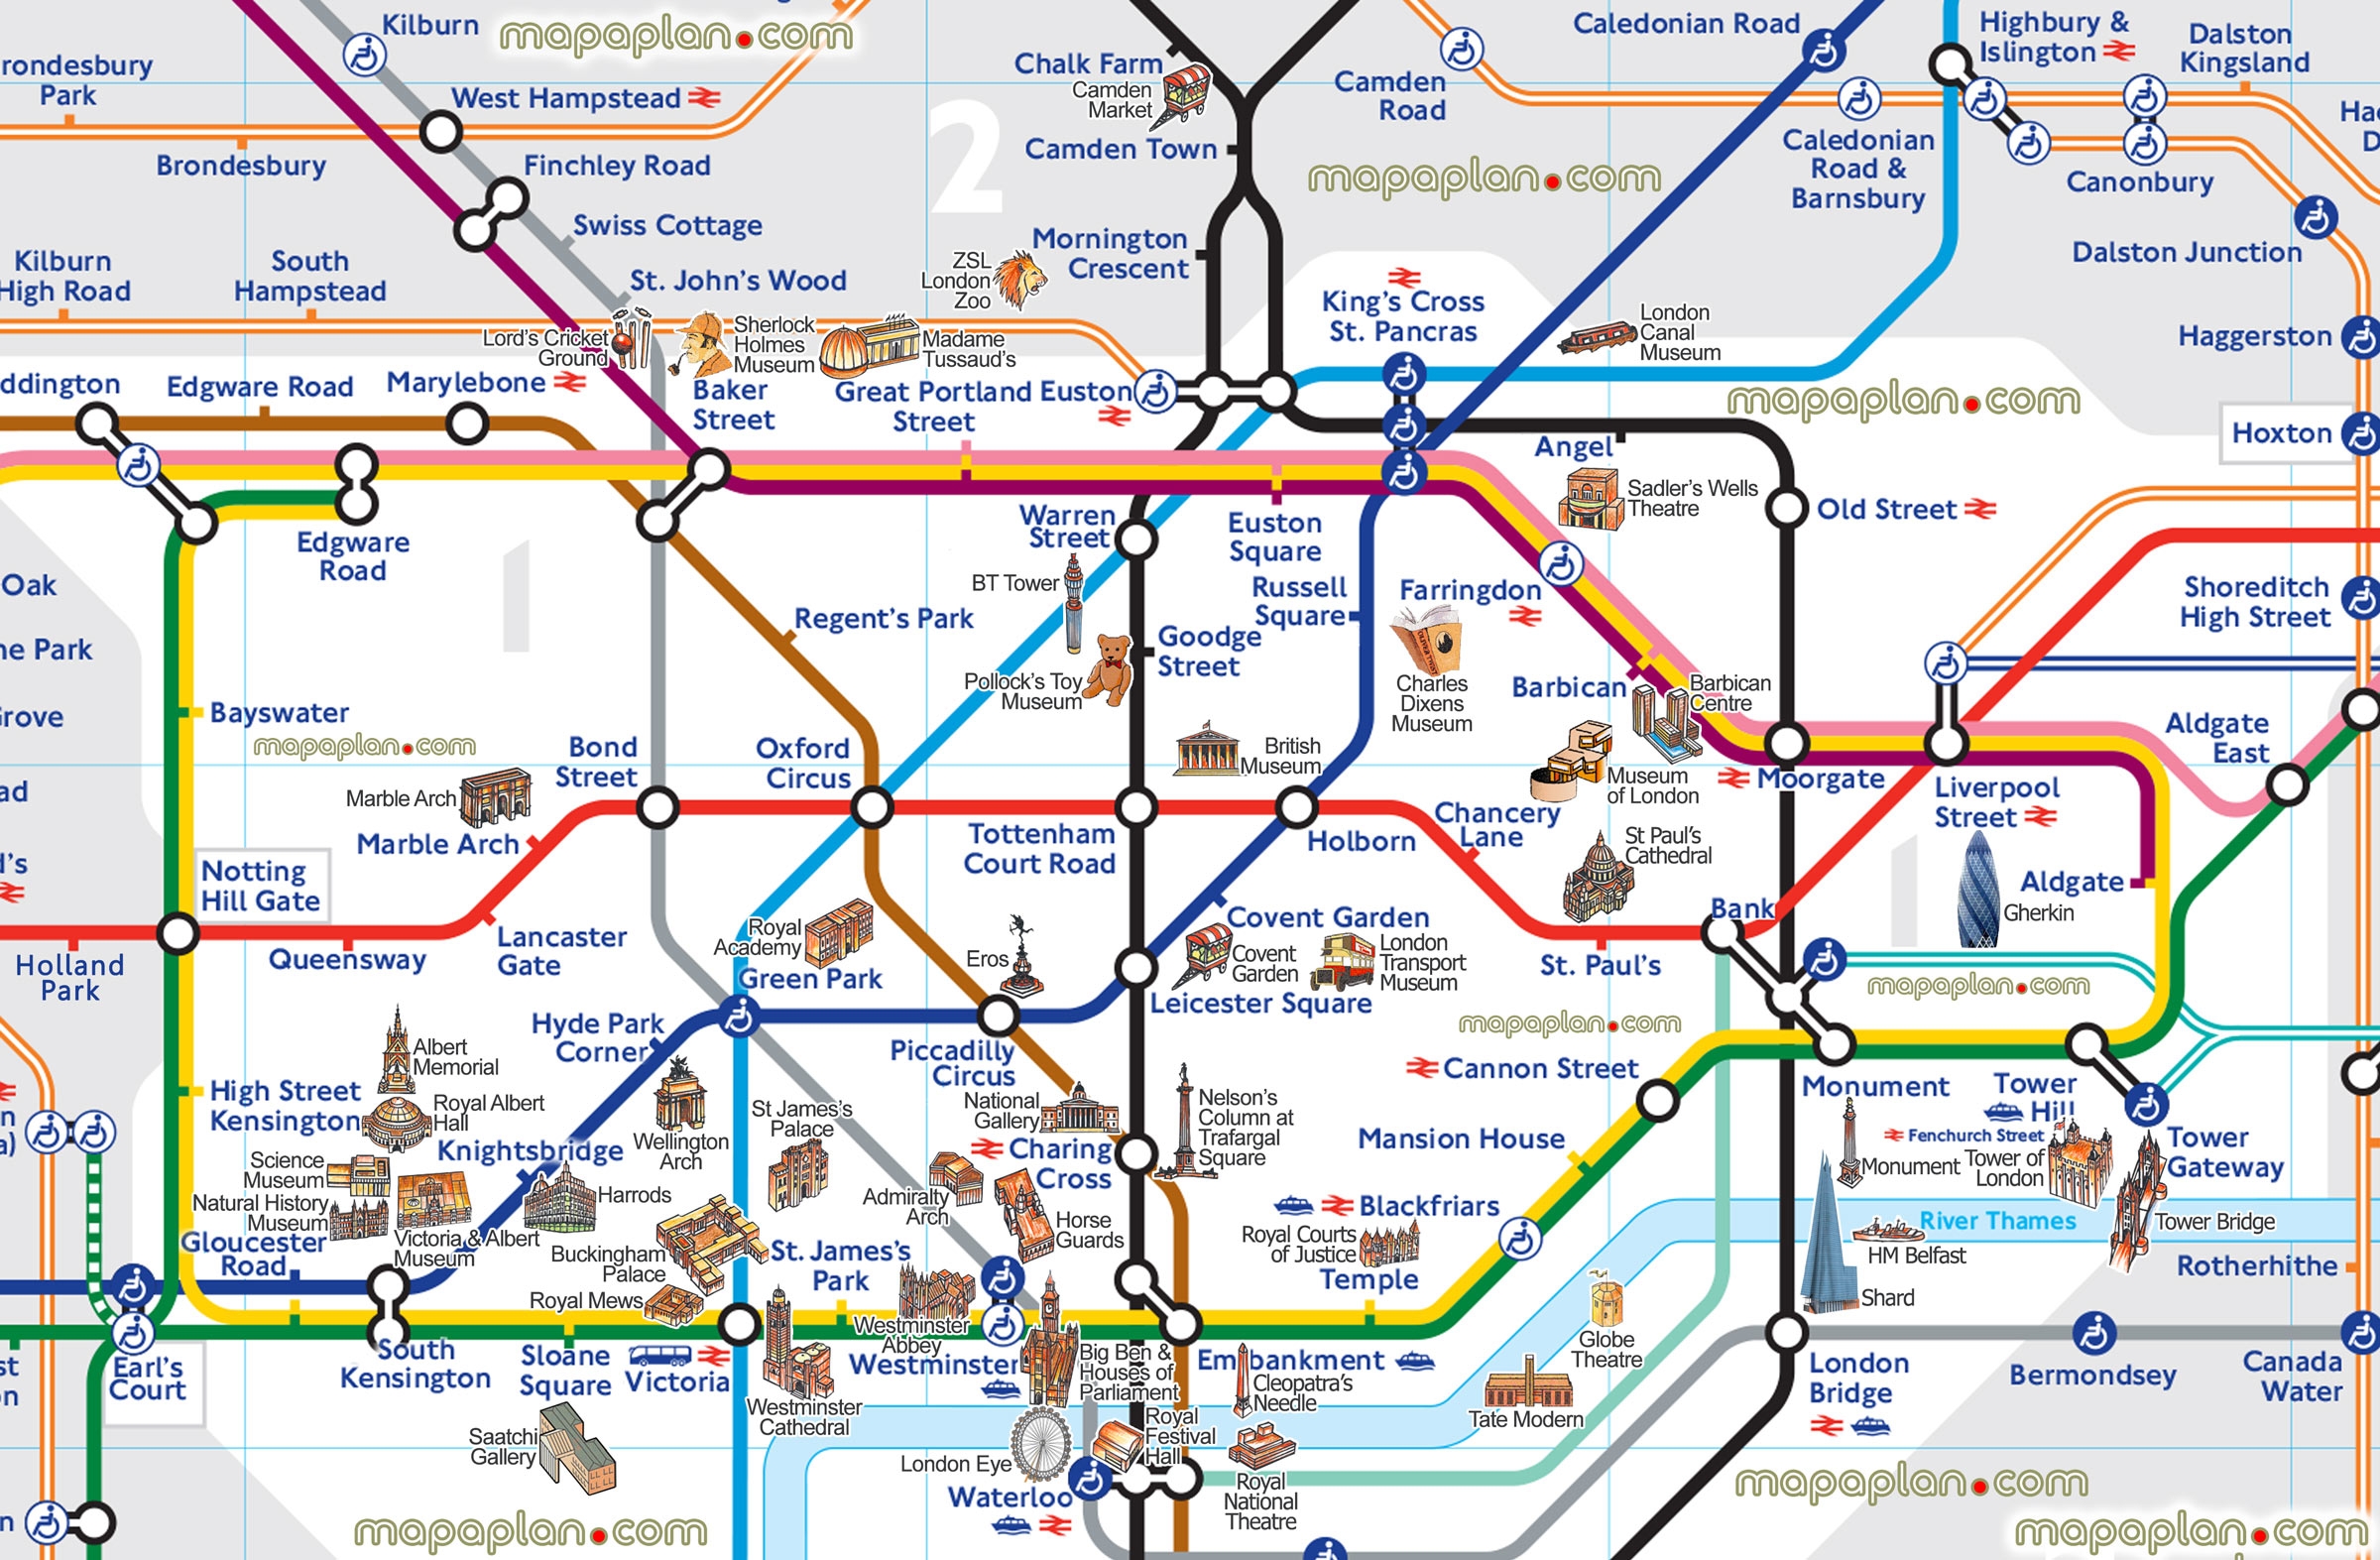 خريطة محطات لندن تحت الأرض